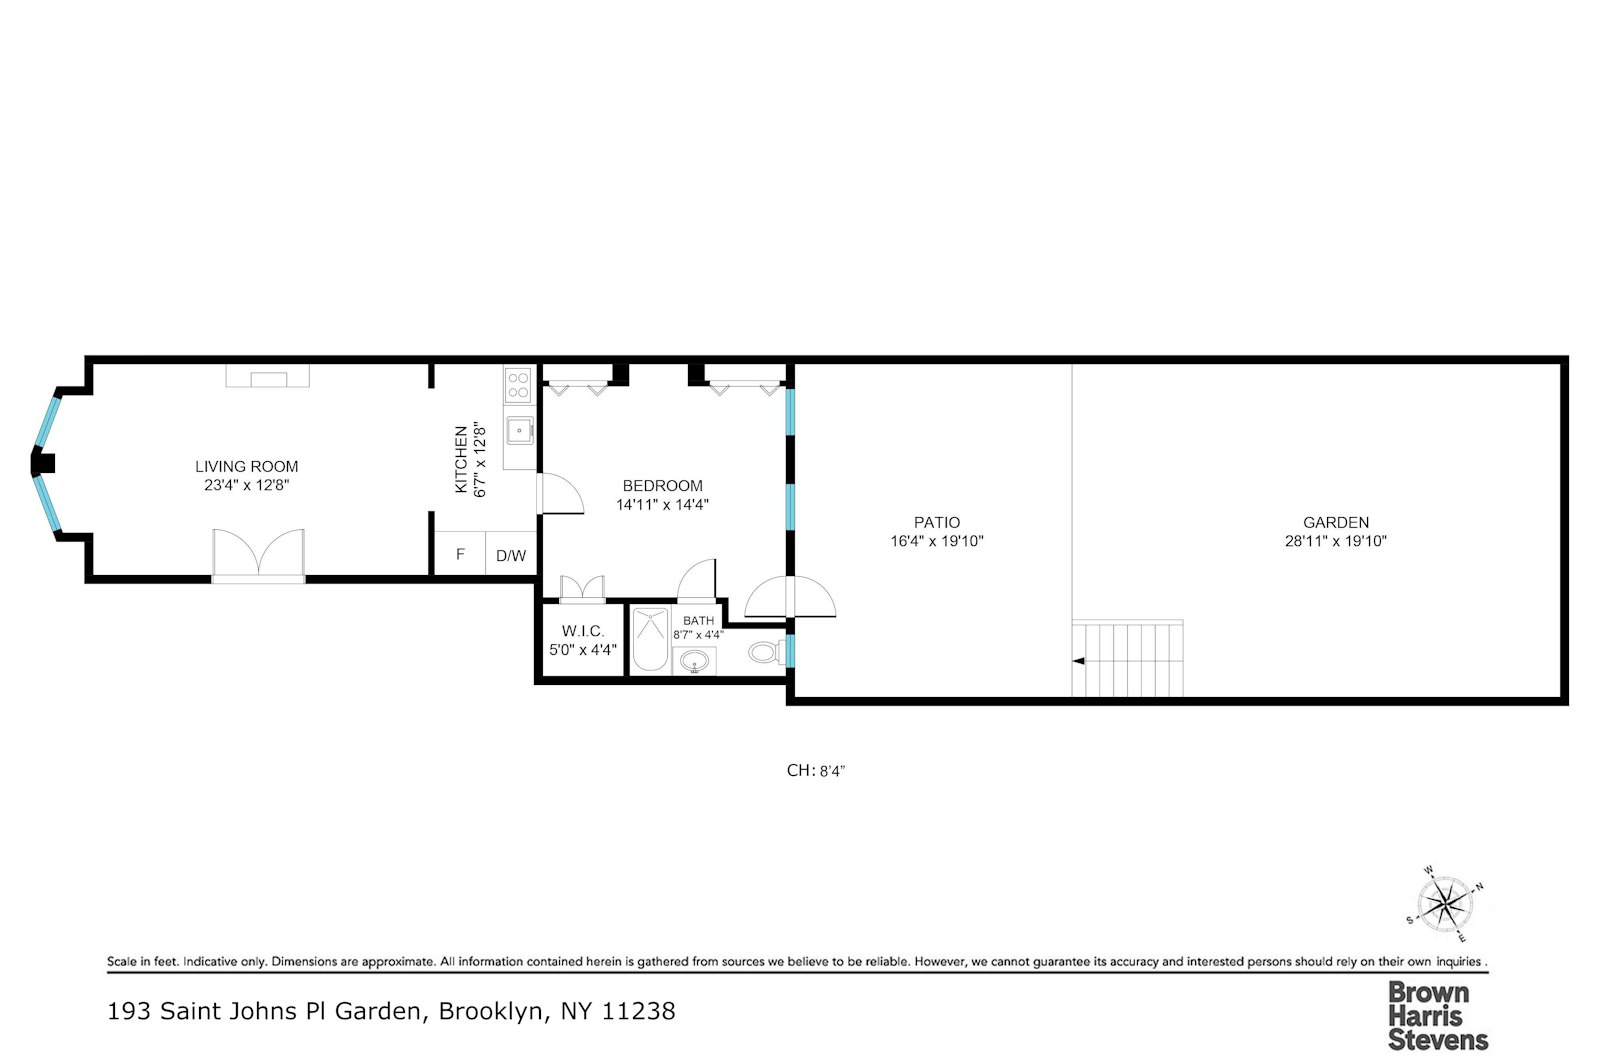 Floorplan for 193 St Johns Pl, GARDEN